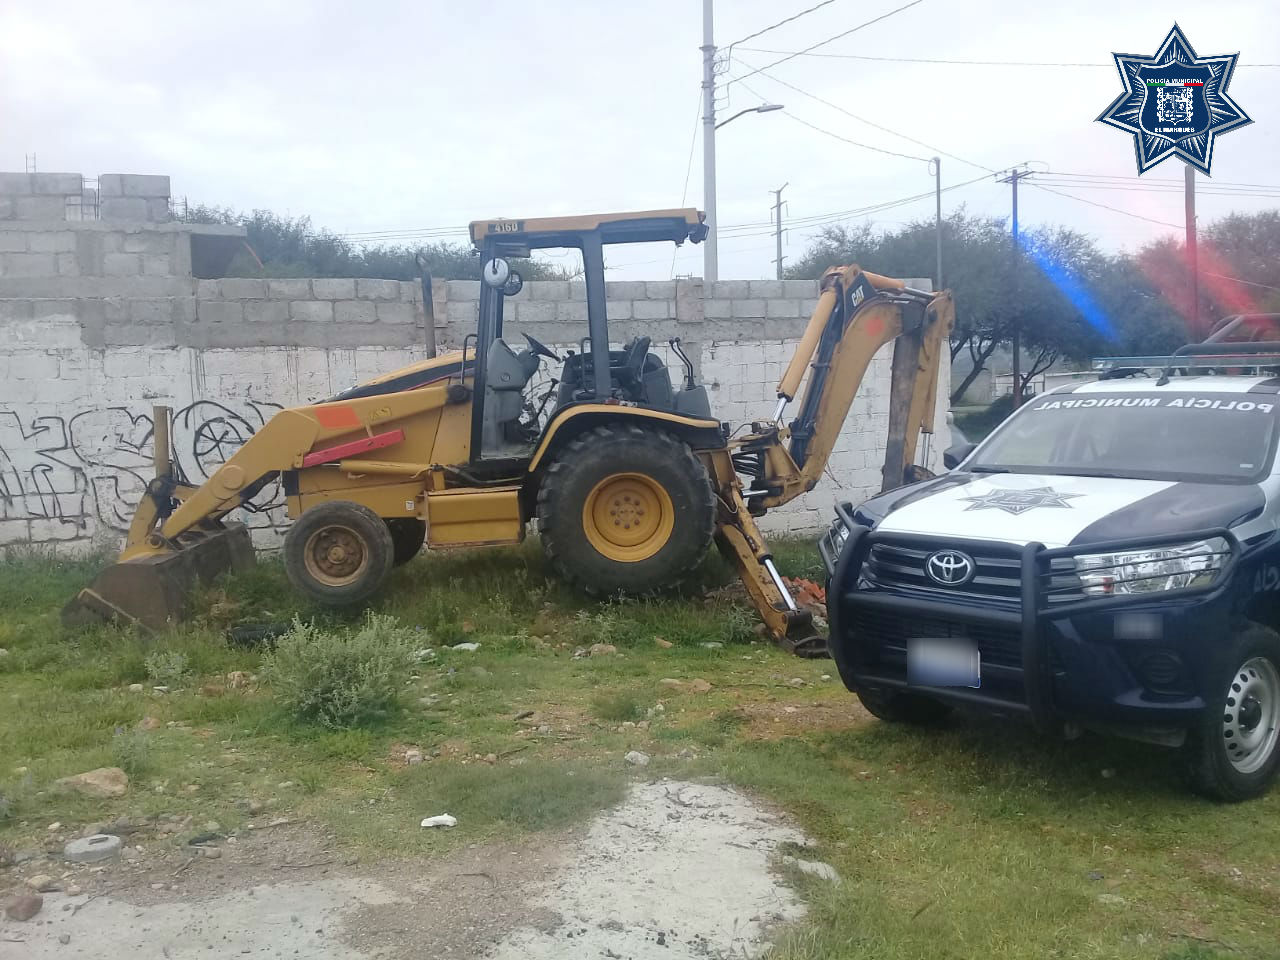  Policía de El Marqués recupera retroexcavadora robada unas horas antes